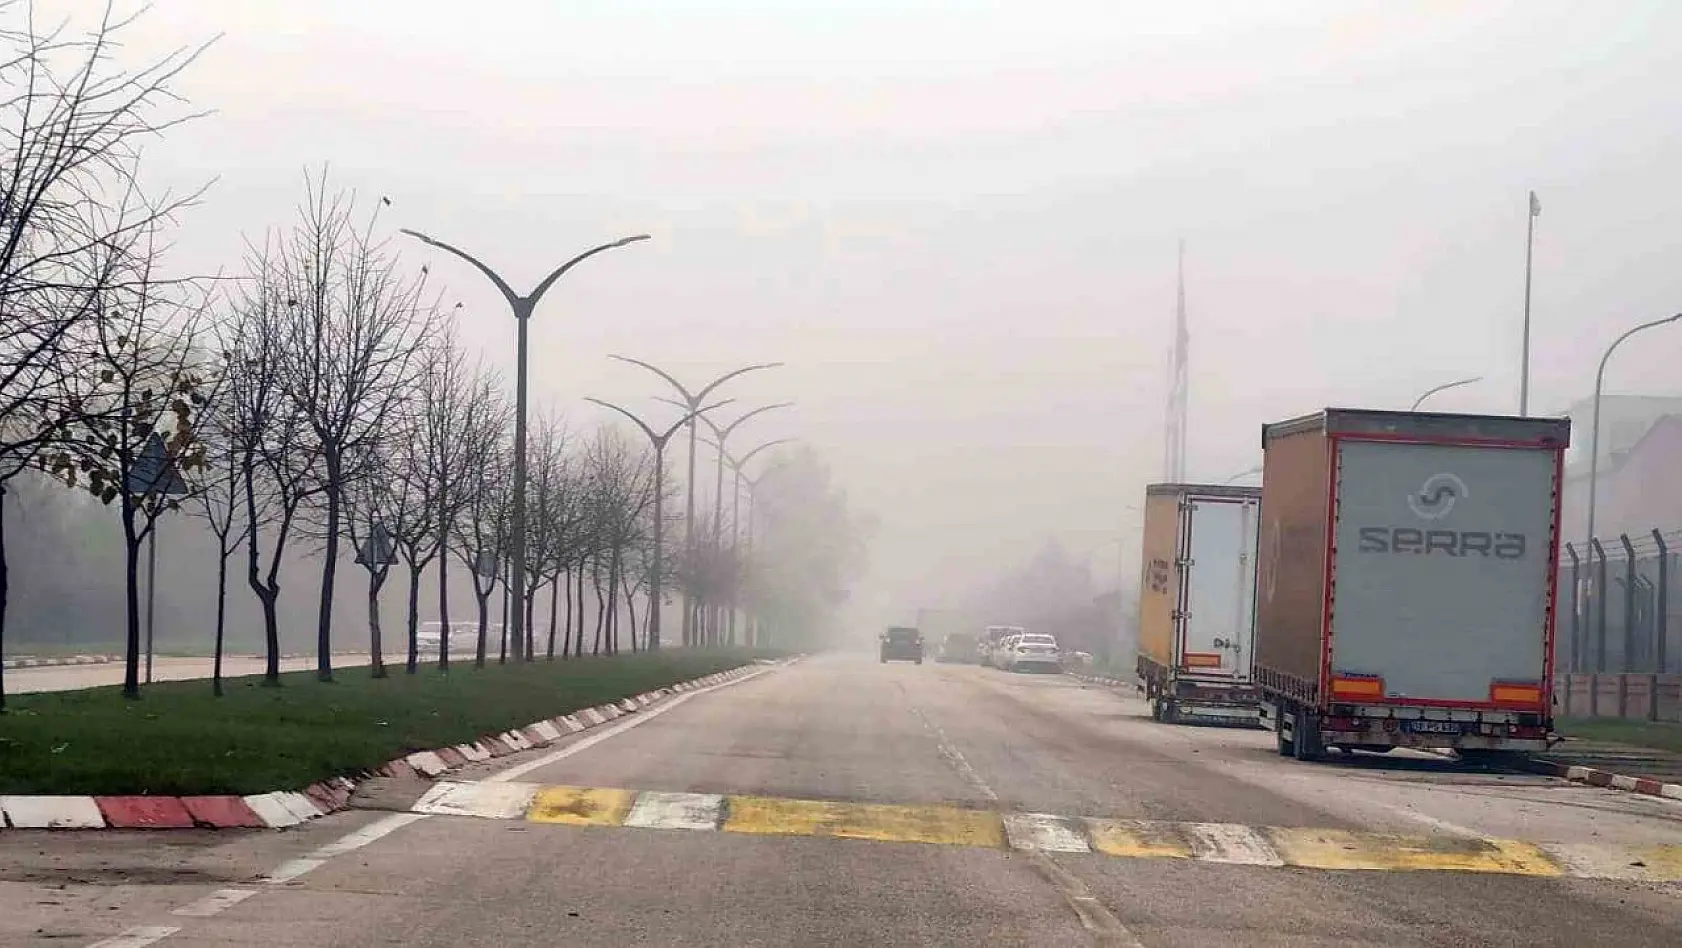 Bursa'da sis etkili oldu